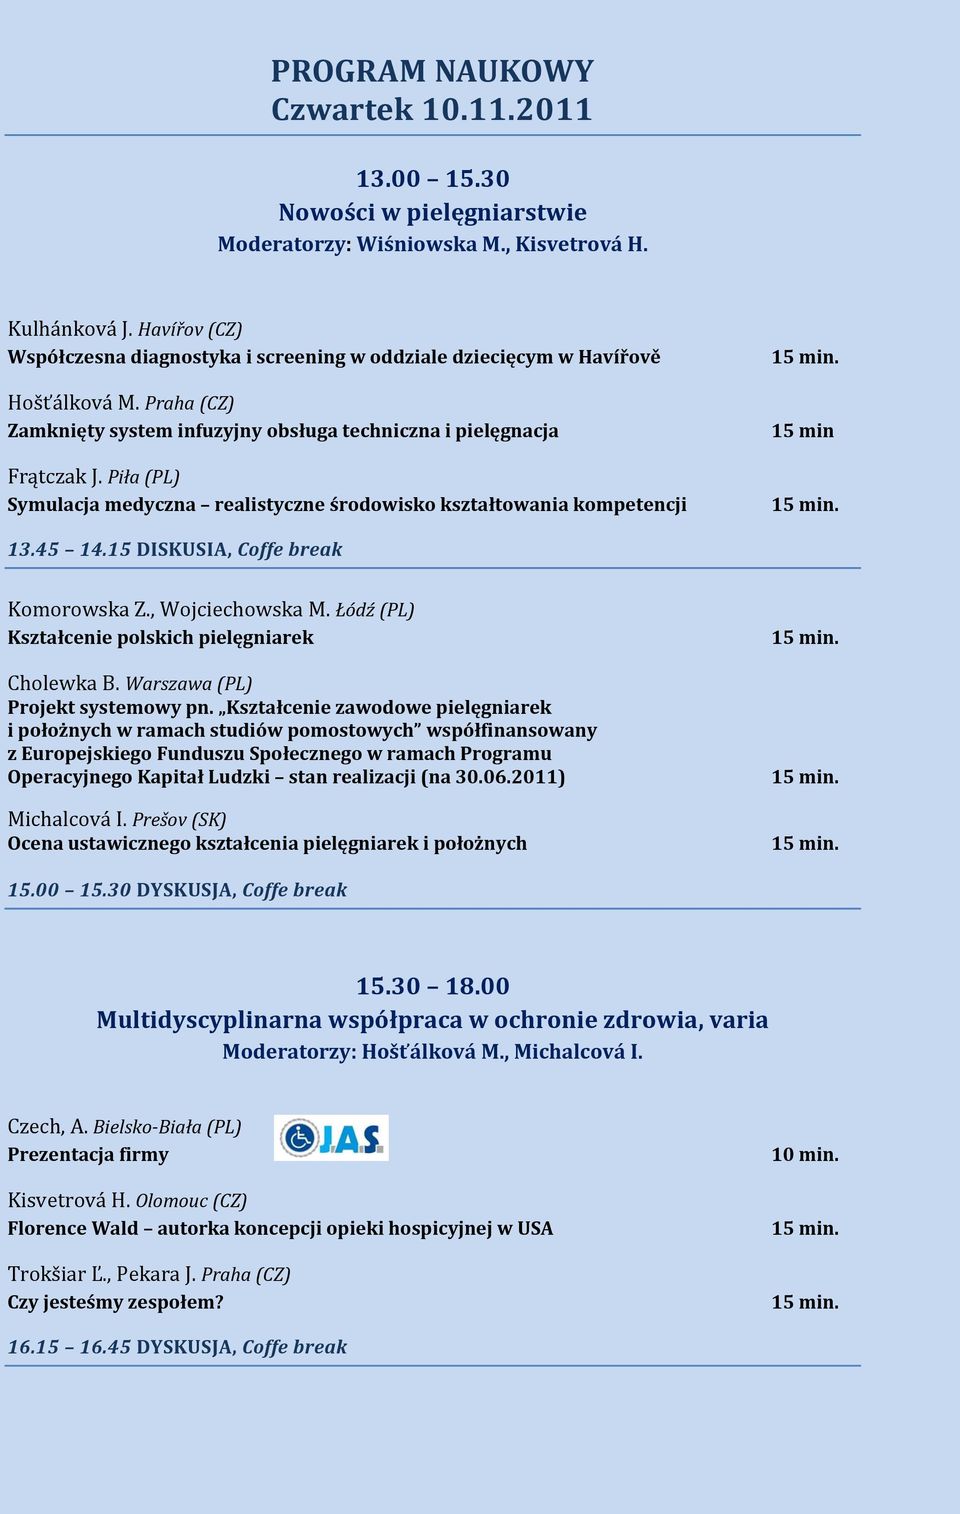 Piła (PL) Symulacja medyczna realistyczne środowisko kształtowania kompetencji 15 min 13.45 14.15 DISKUSIA, Coffe break Komorowska Z., Wojciechowska M.